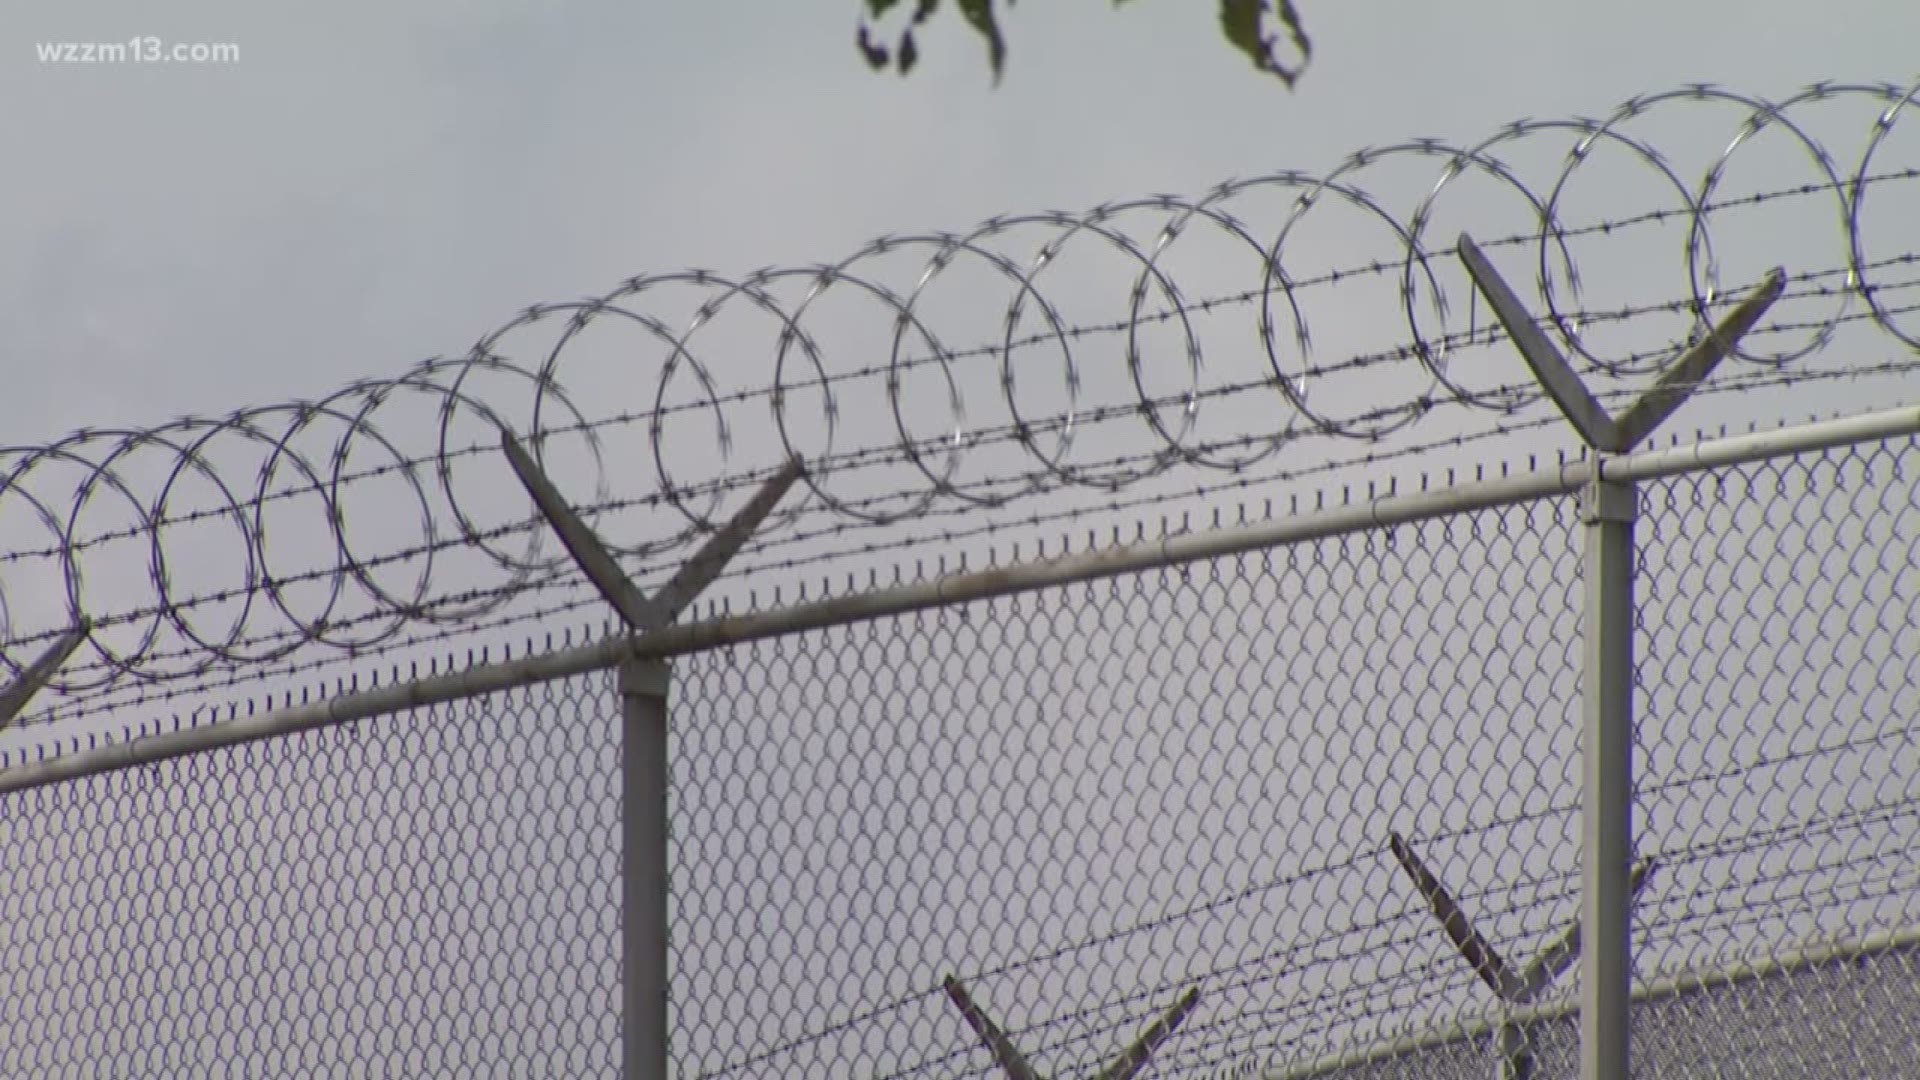 Inmate escapes over razor wire